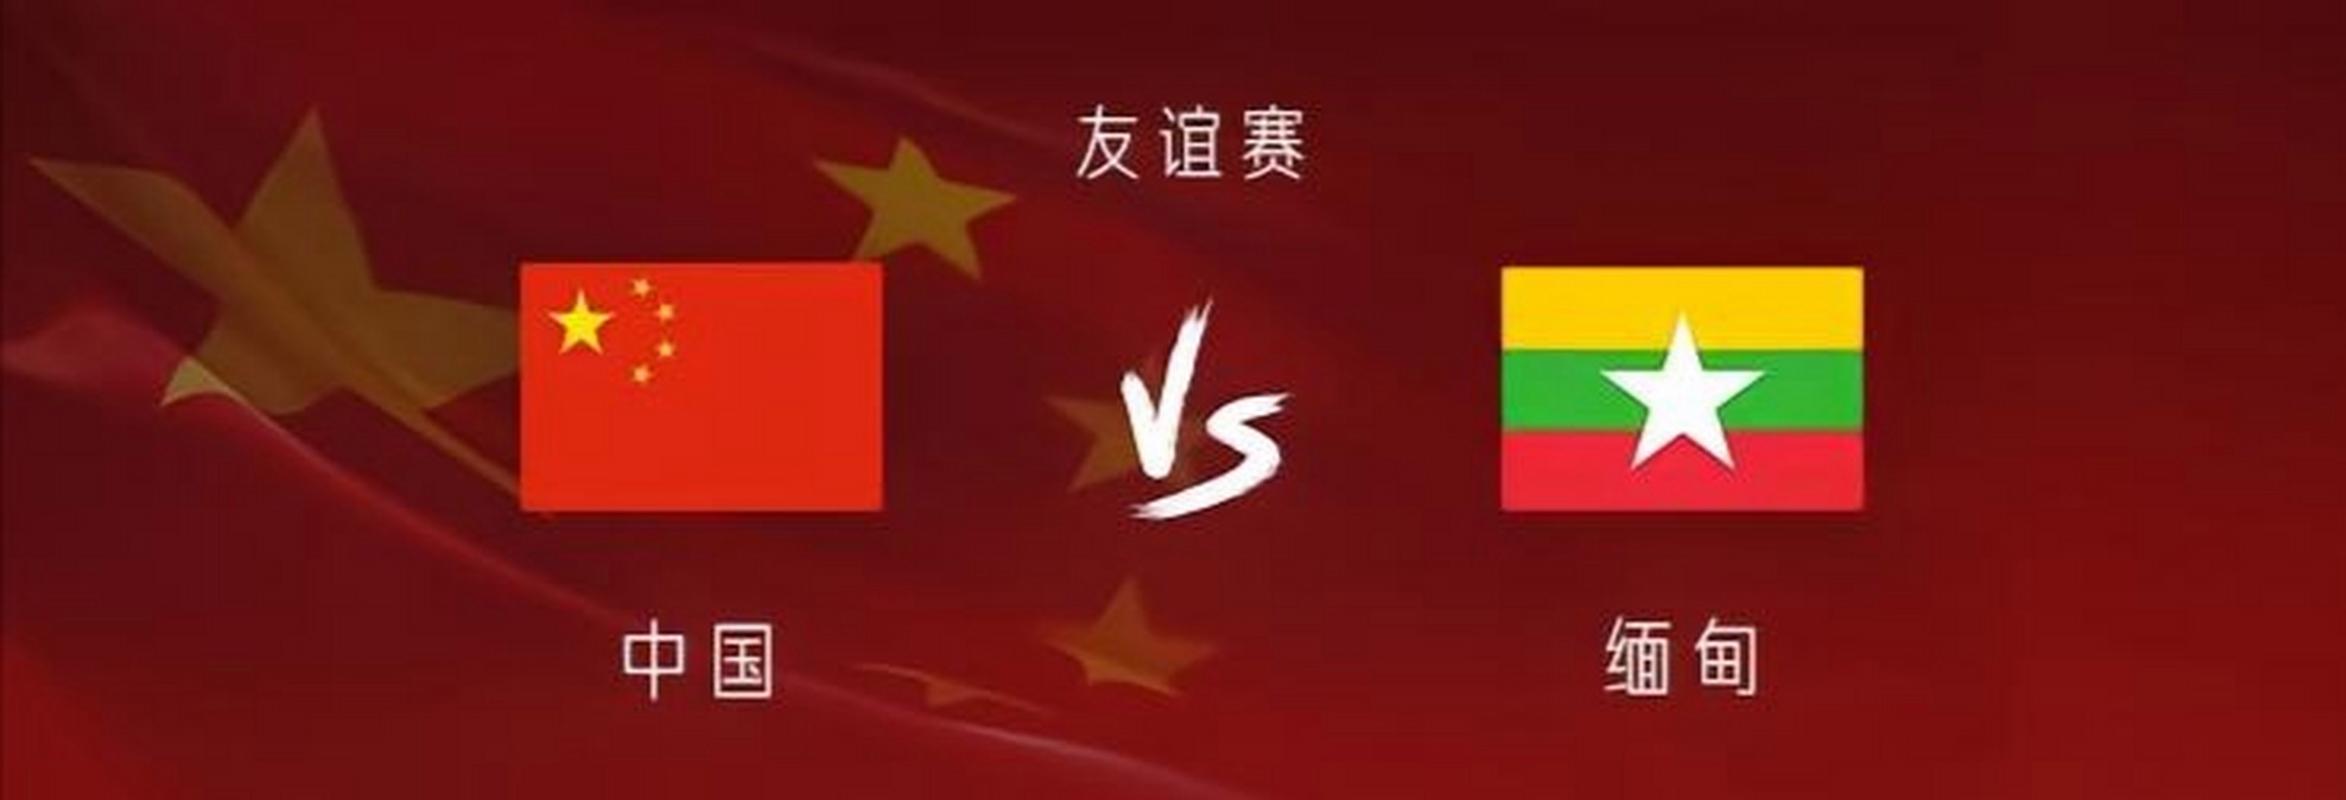 中国vs缅甸实力对比图